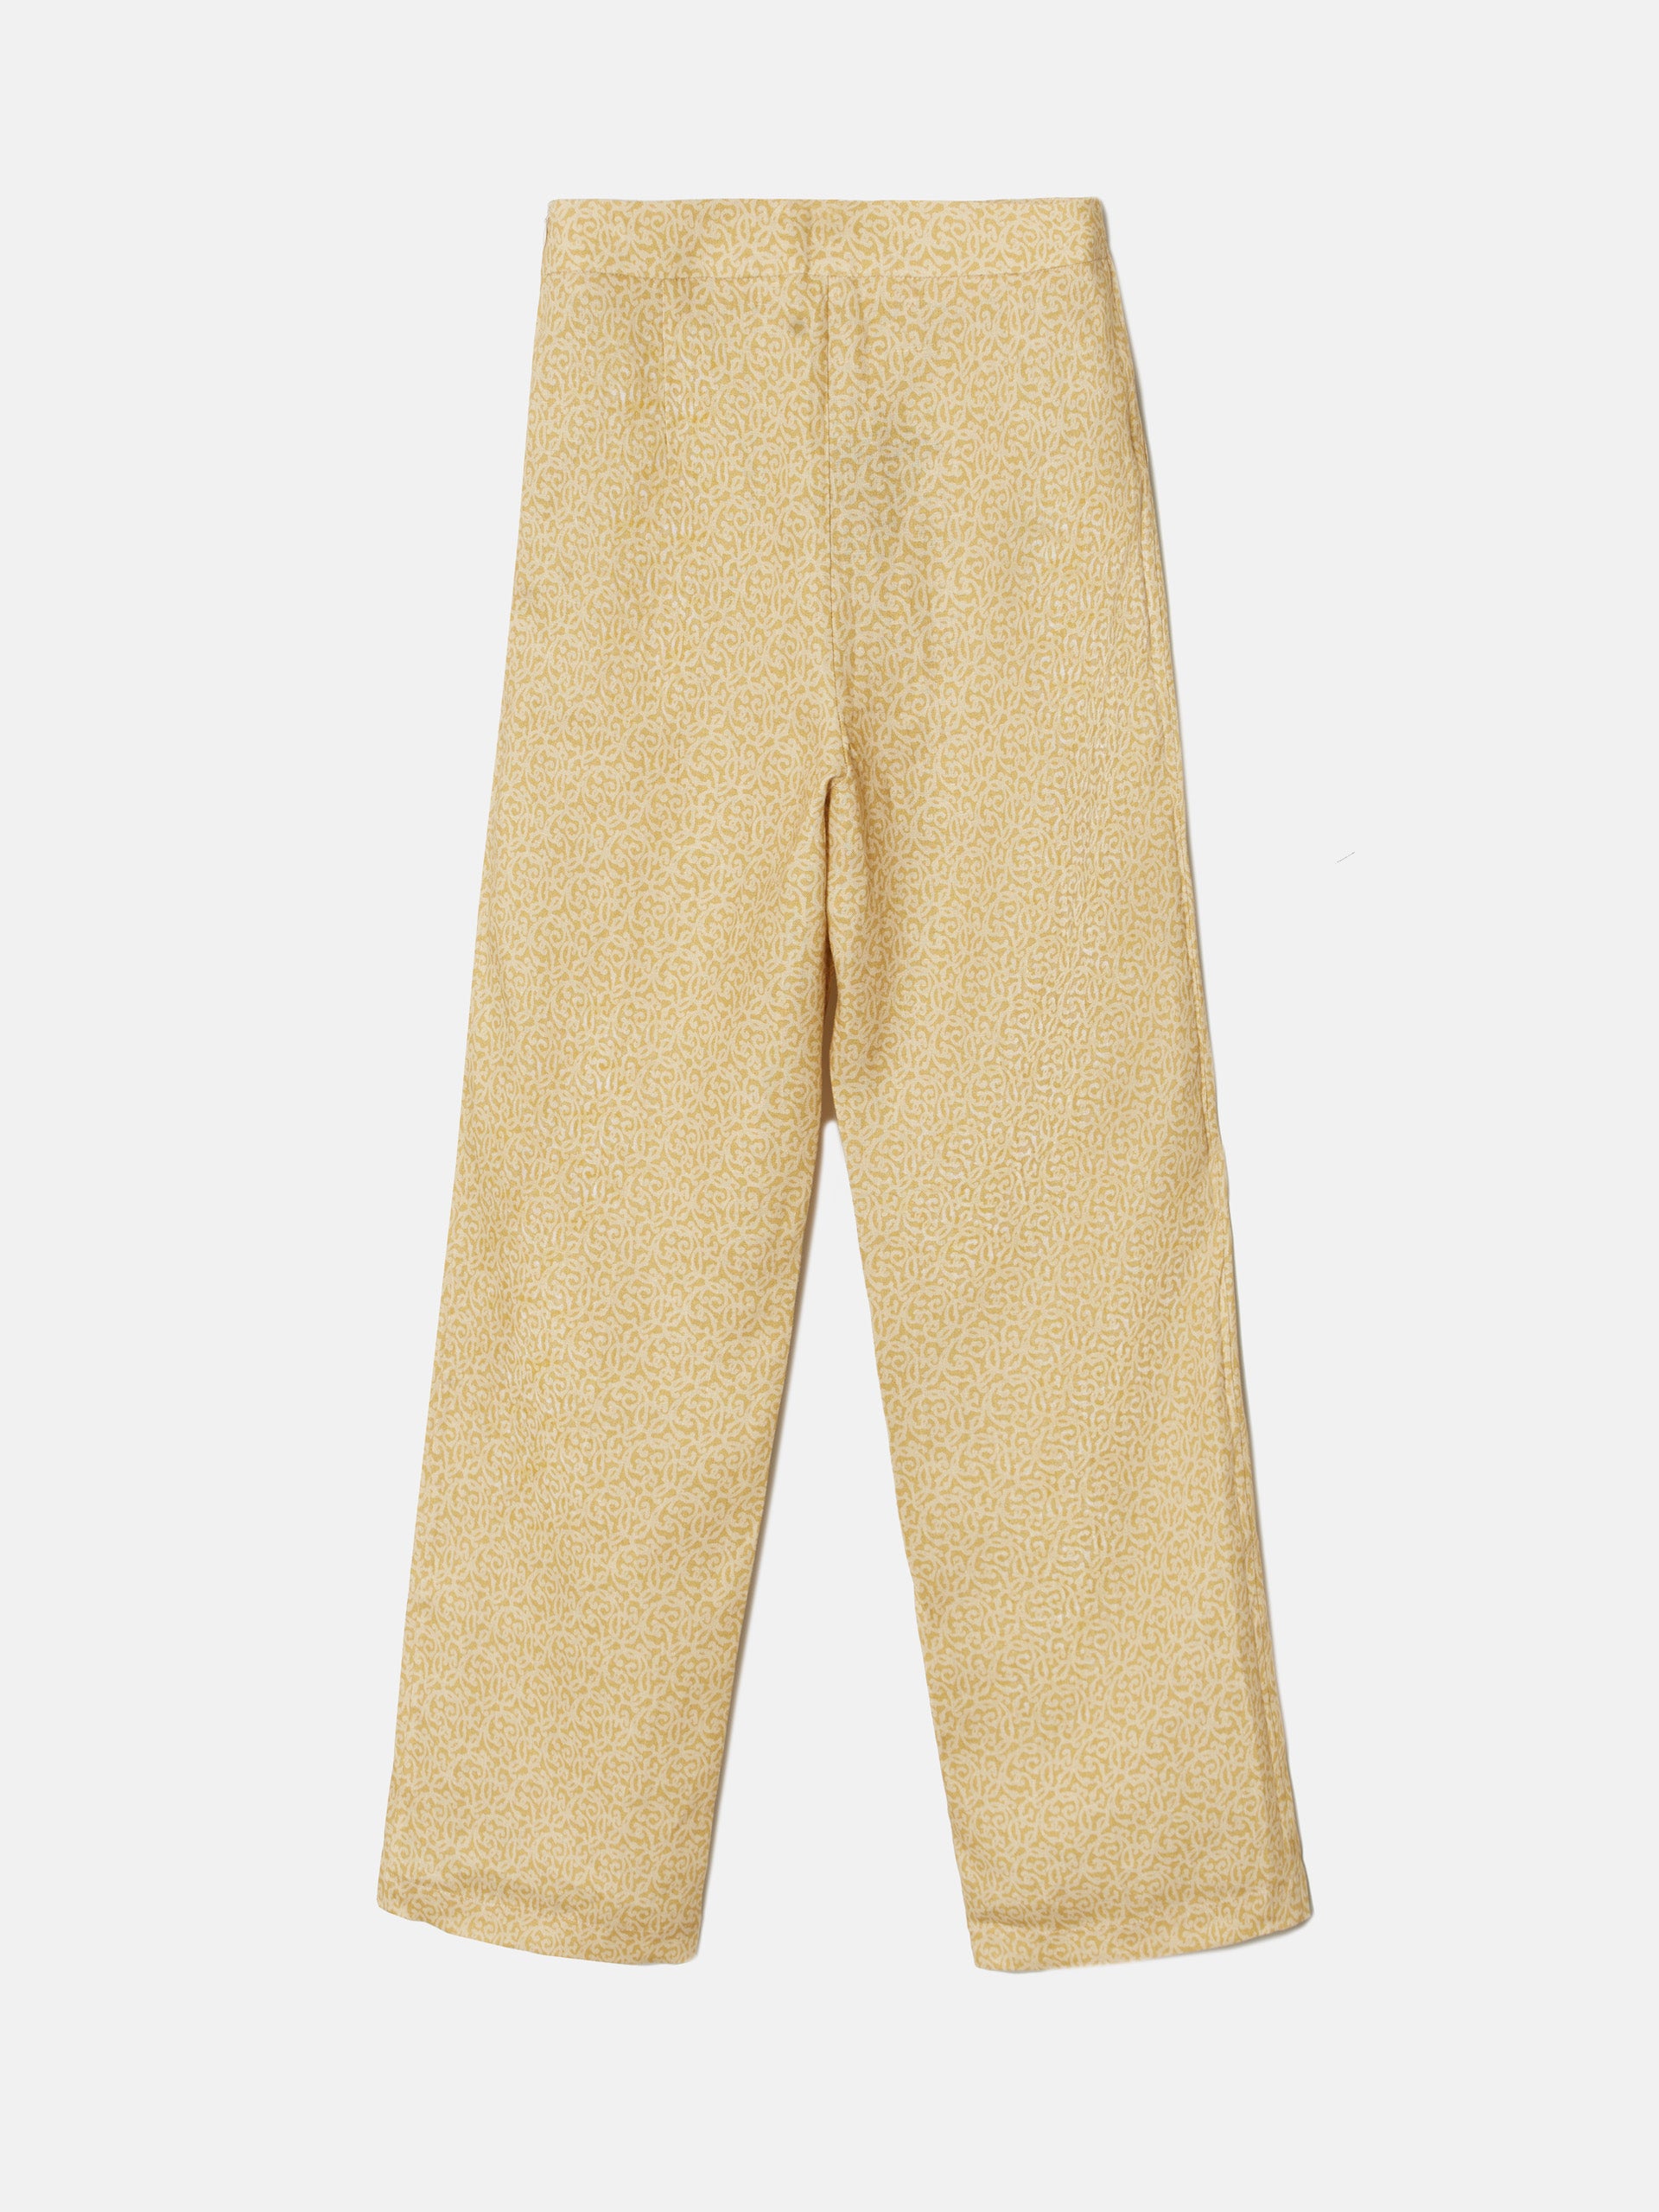 Pantalon lino estampado amarillo